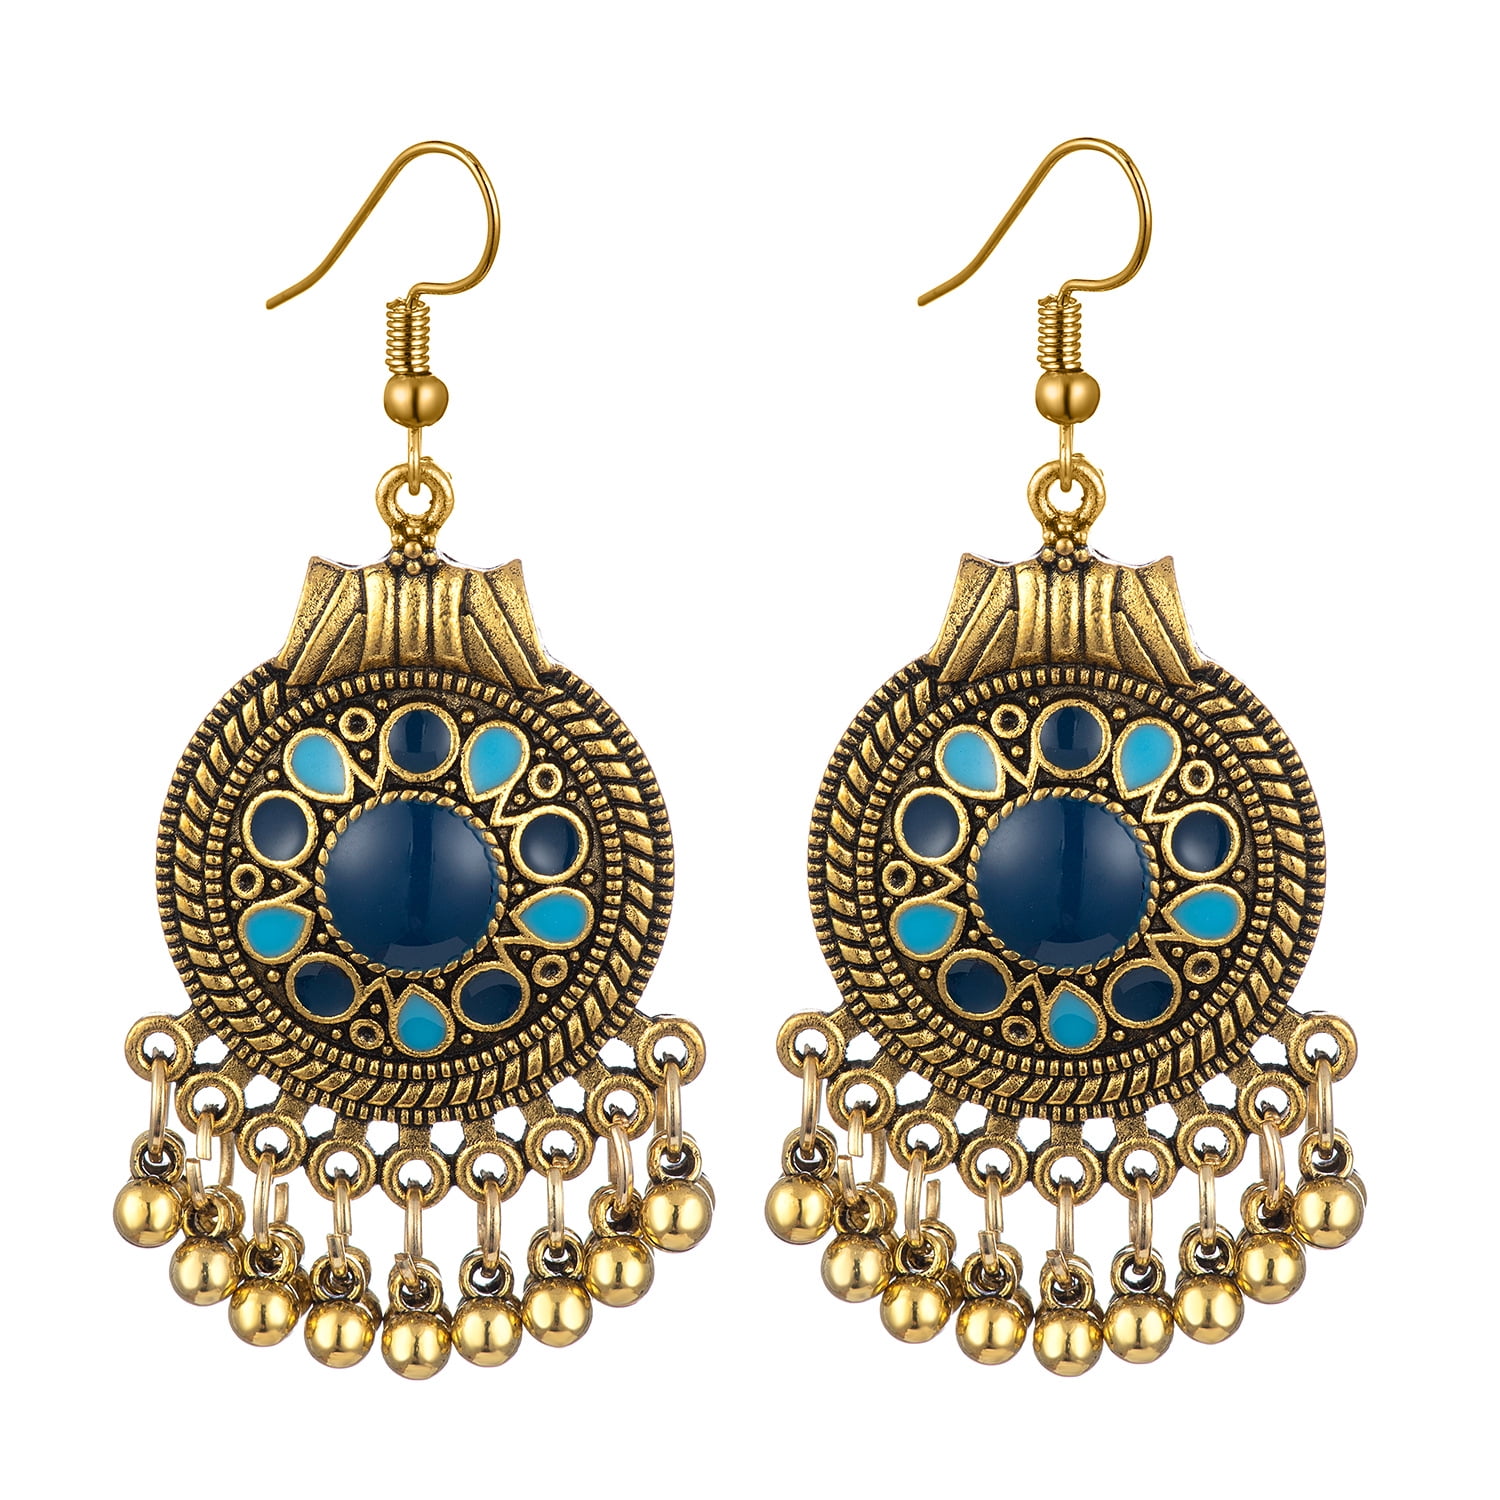 Vintage Women Silver Carved Hook Tassel Gypsy Ethnic Earrings Wedding Jewelry 